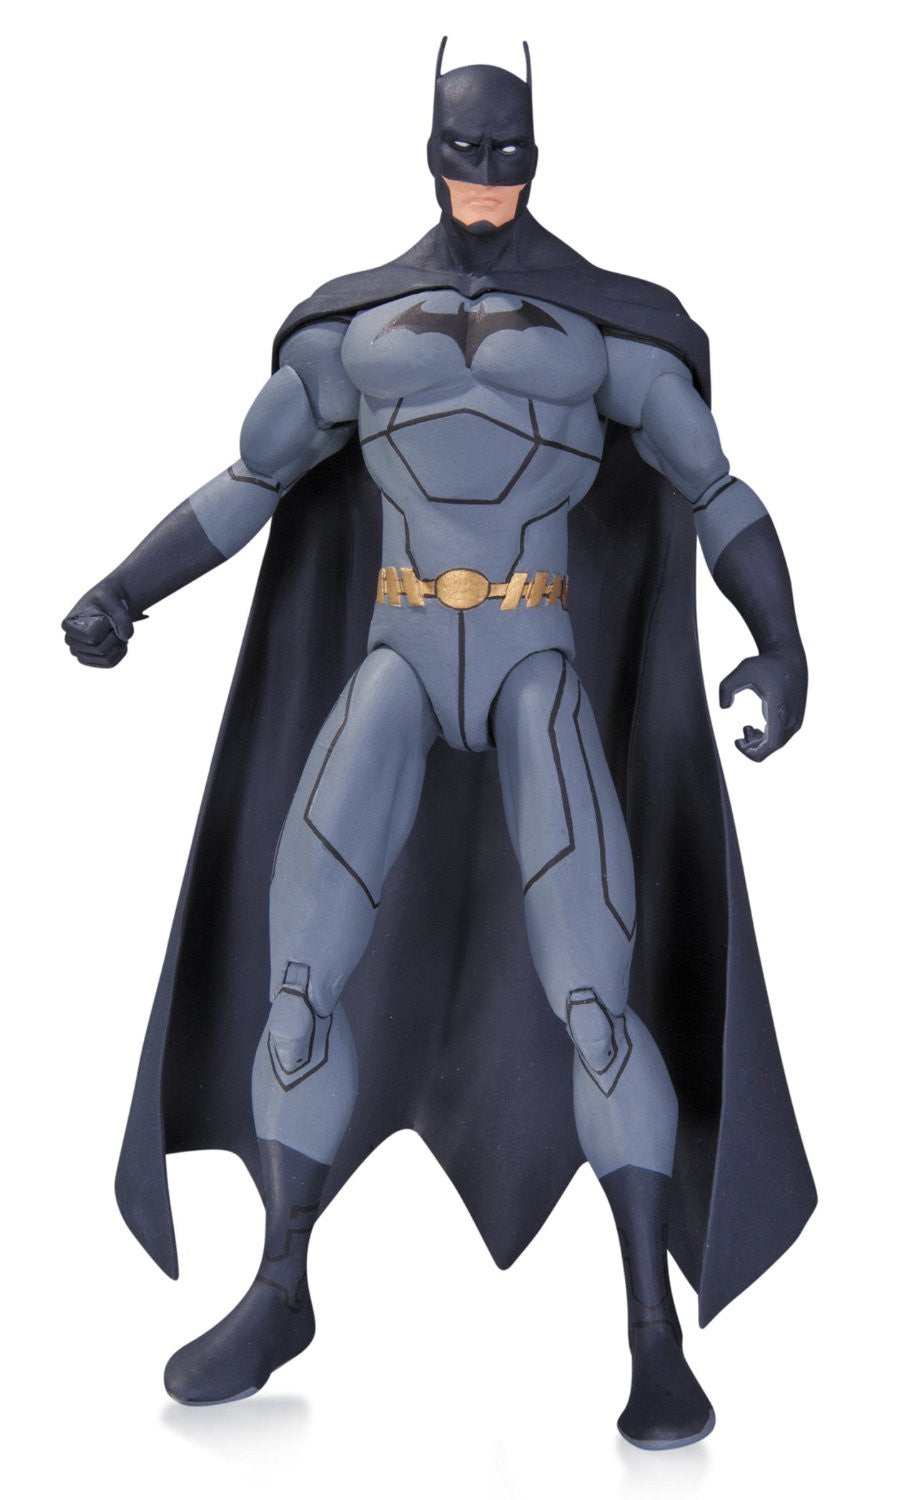 dc universe batman action figure